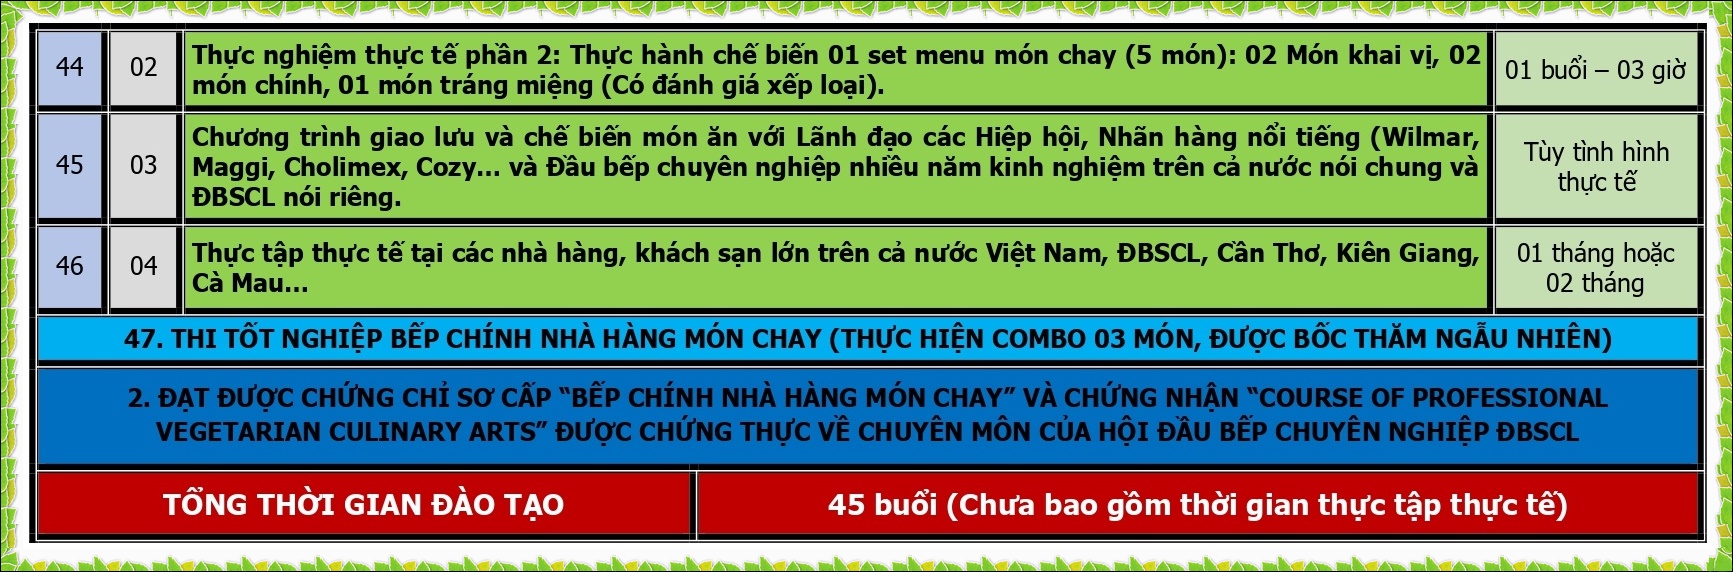 BEP CHINH BEP CHAY_page-0005